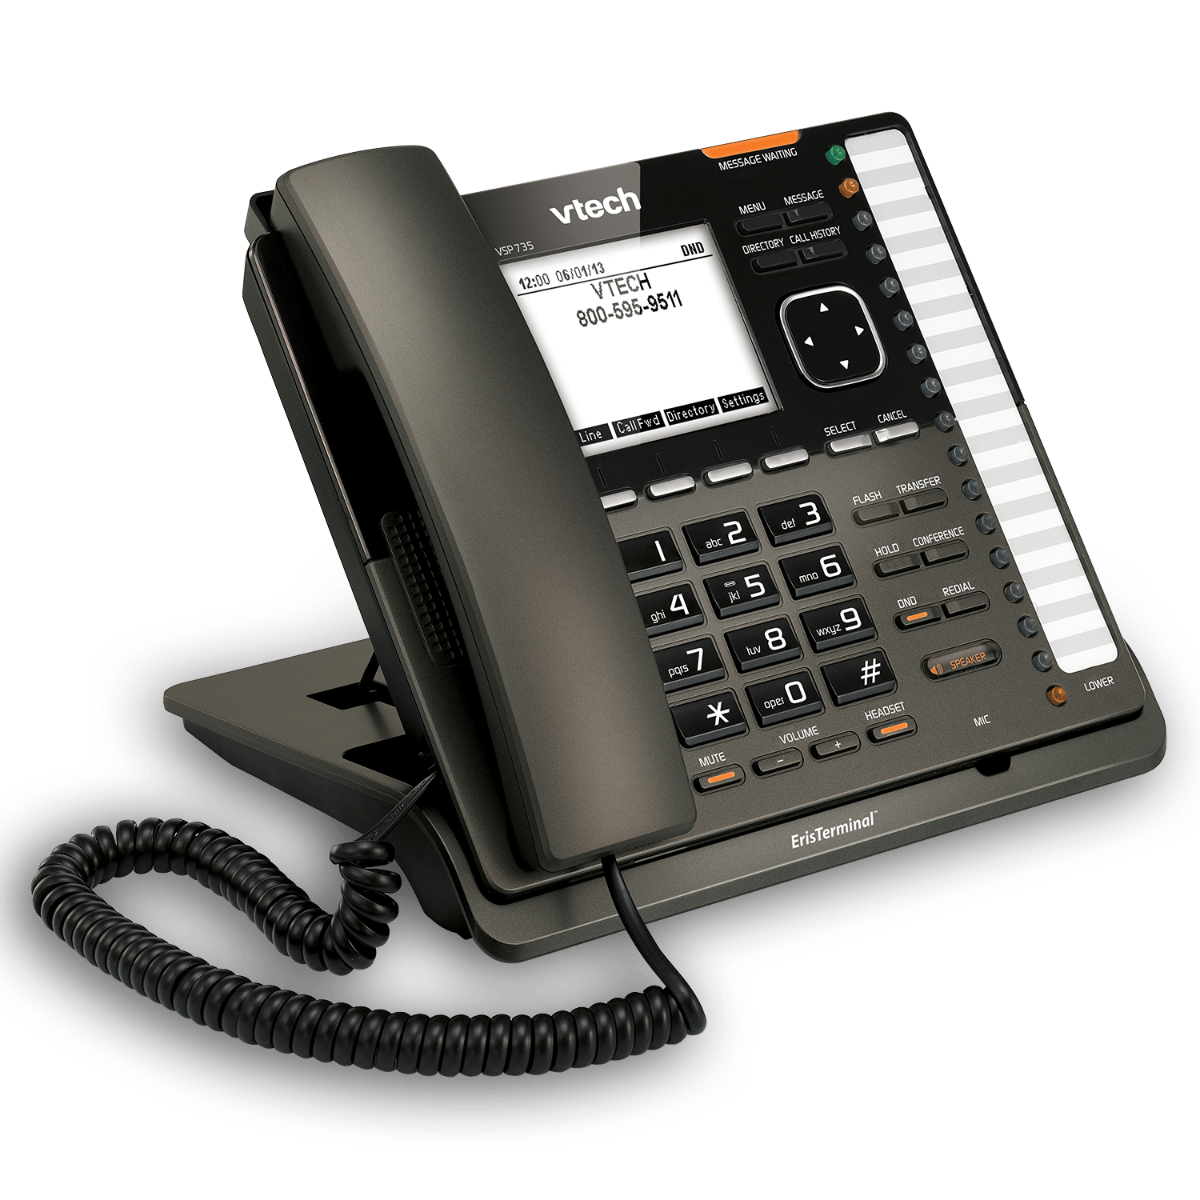 VTech VSP735 SIP Telefon sa 5 SIP liniija i 32 programabilna tastera i još puno opcija koje omogućavaju kompanijama da lakše komuniciraju i sarađuju.